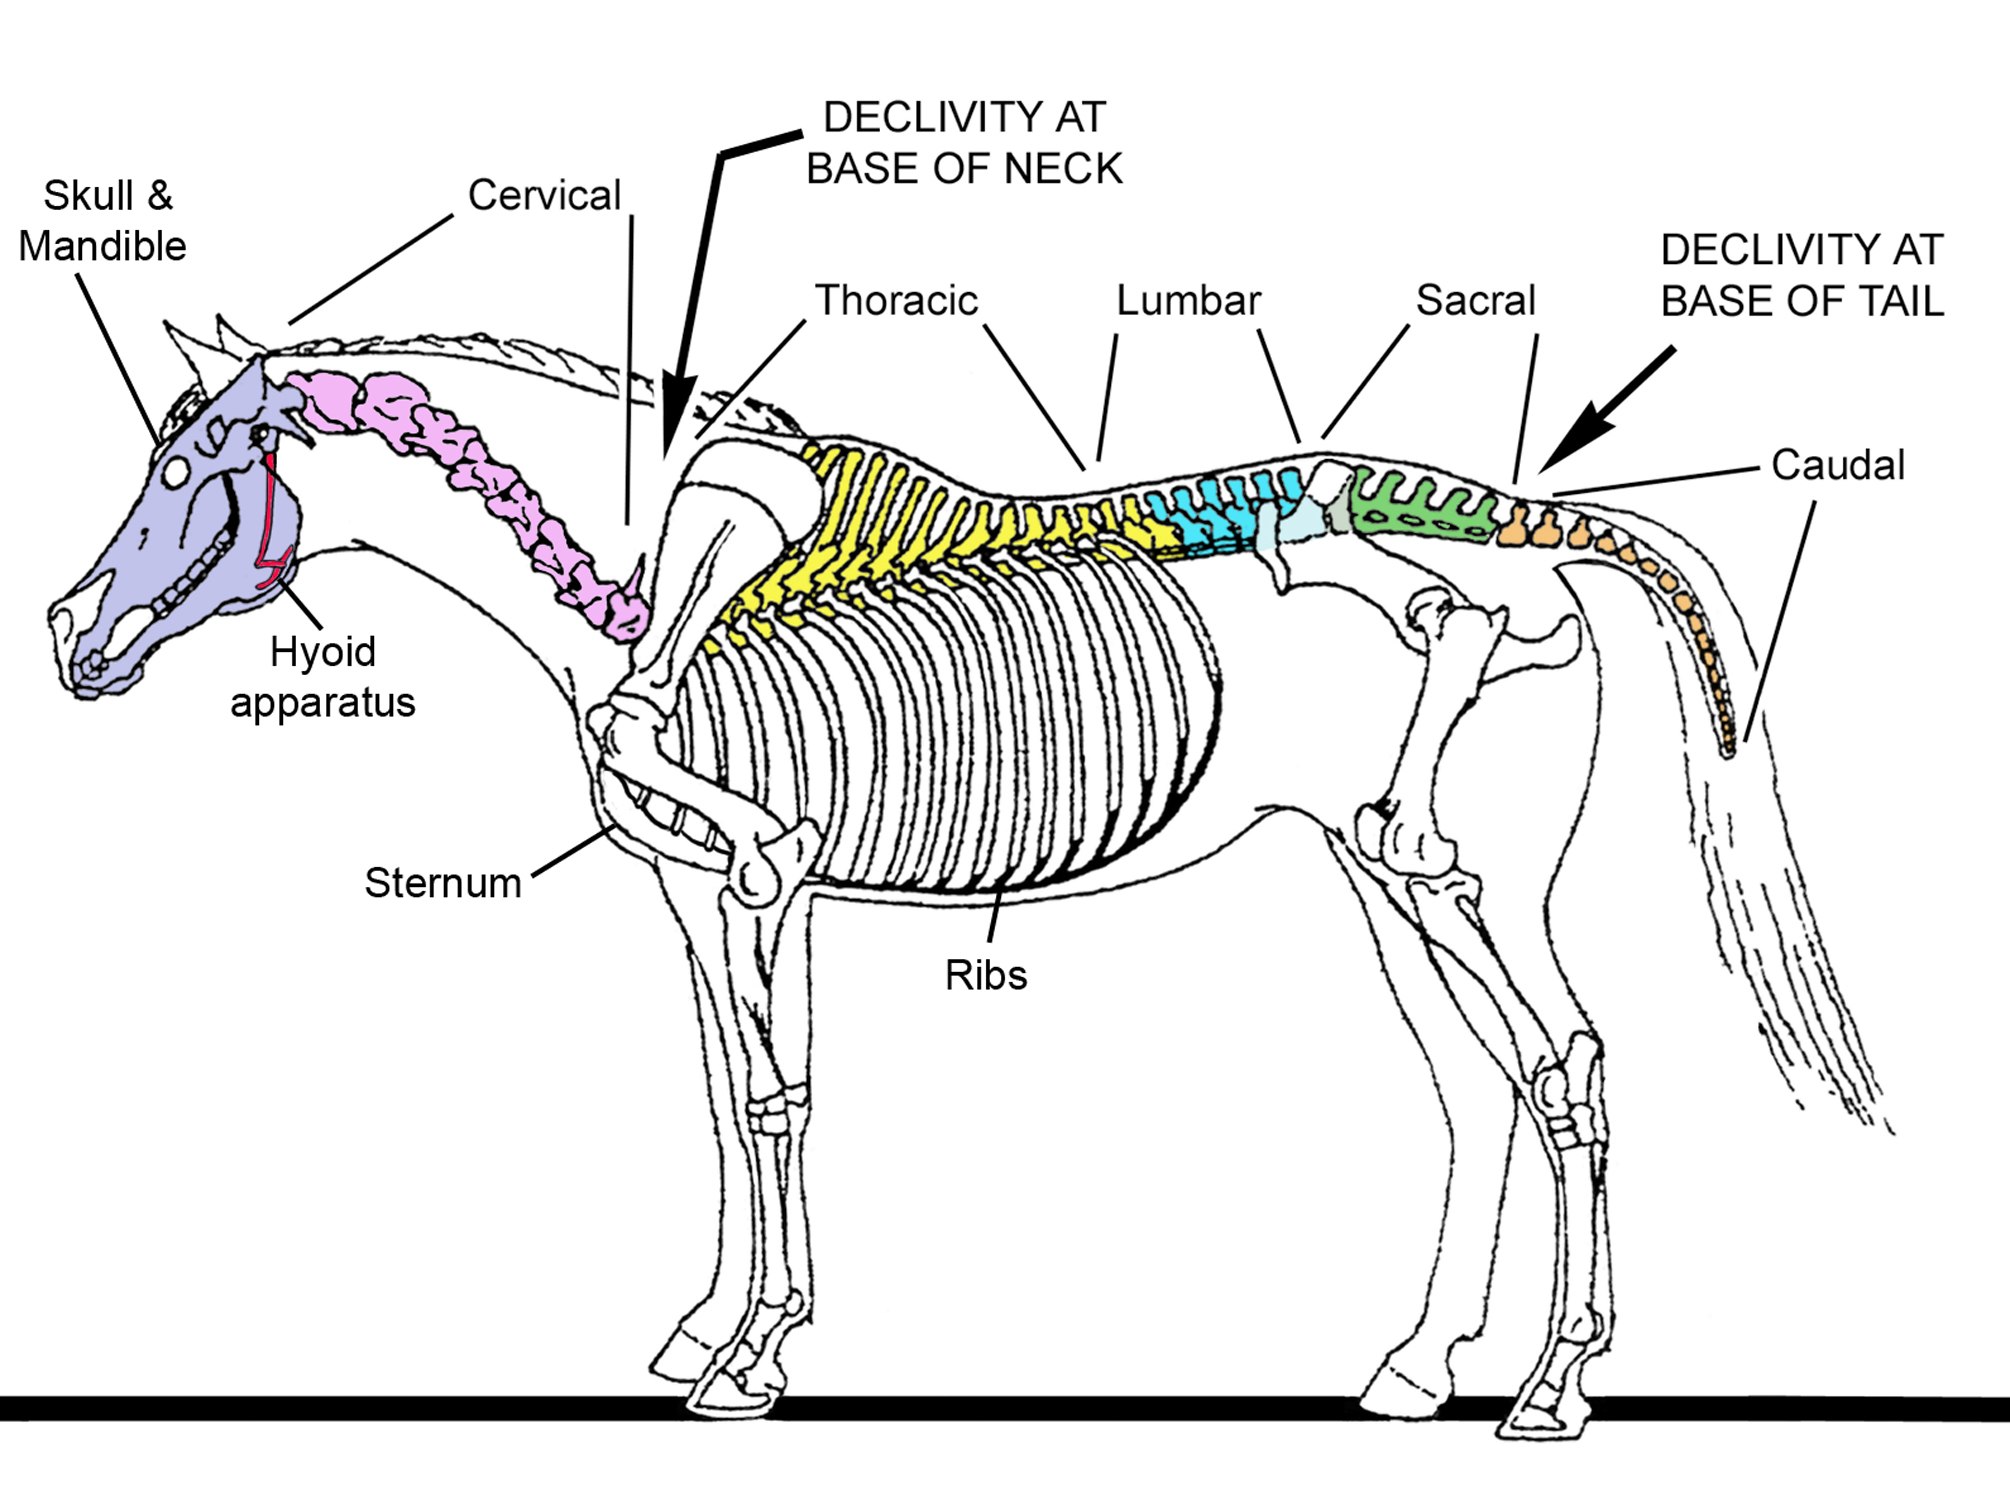 Строение скелета лошади анатомия